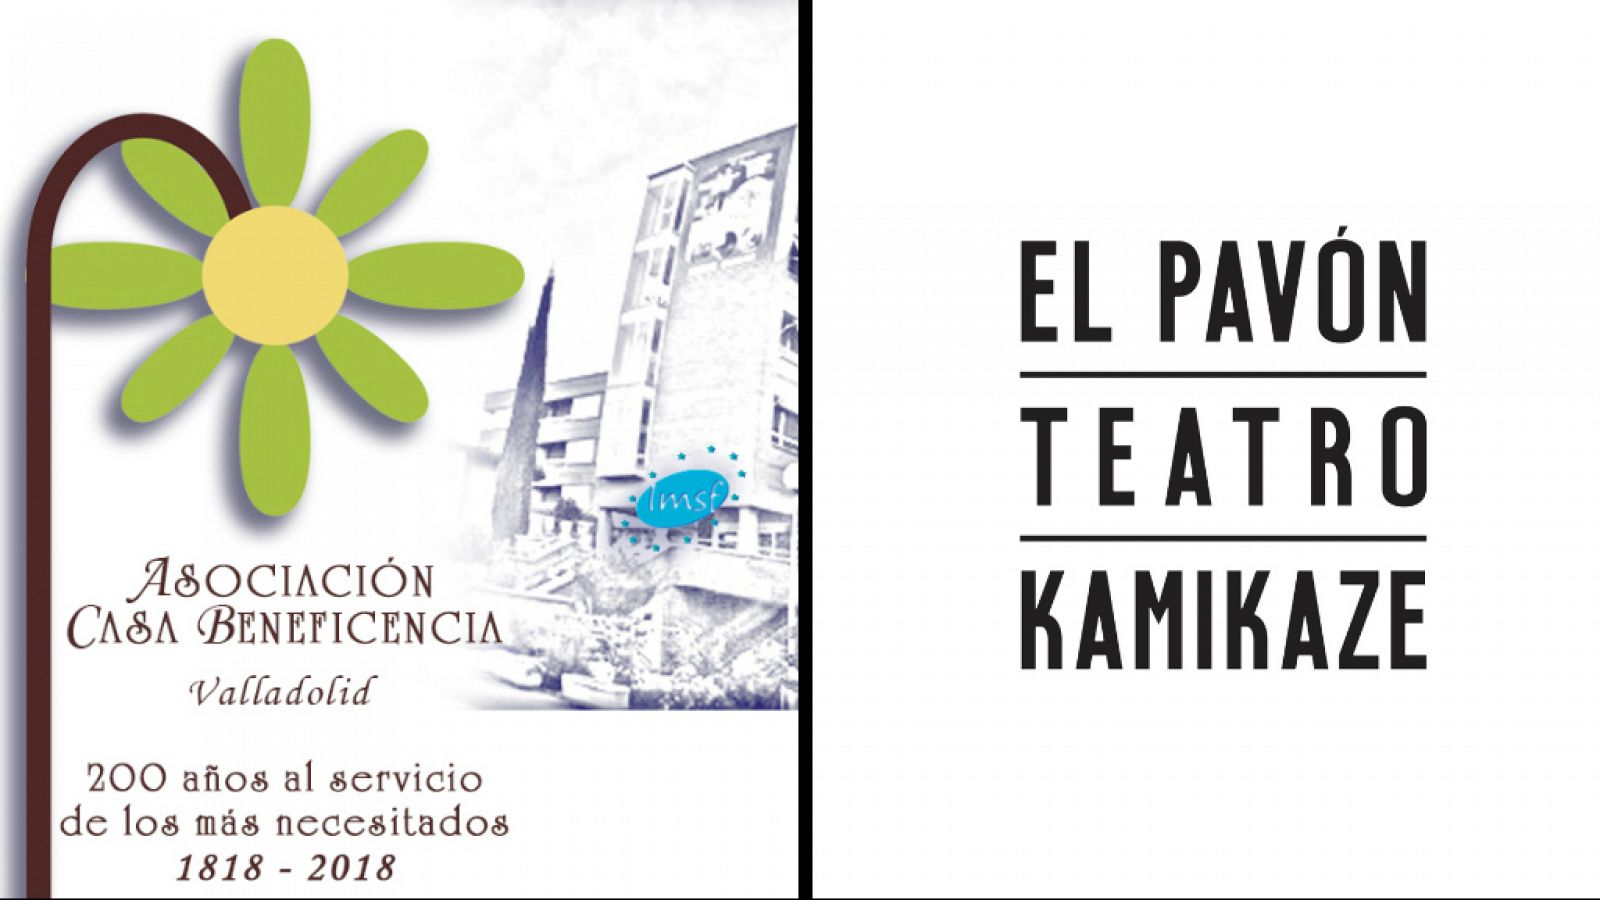 Casa de Beneficencia de Valladolid y Pavón Teatro Kamikaze